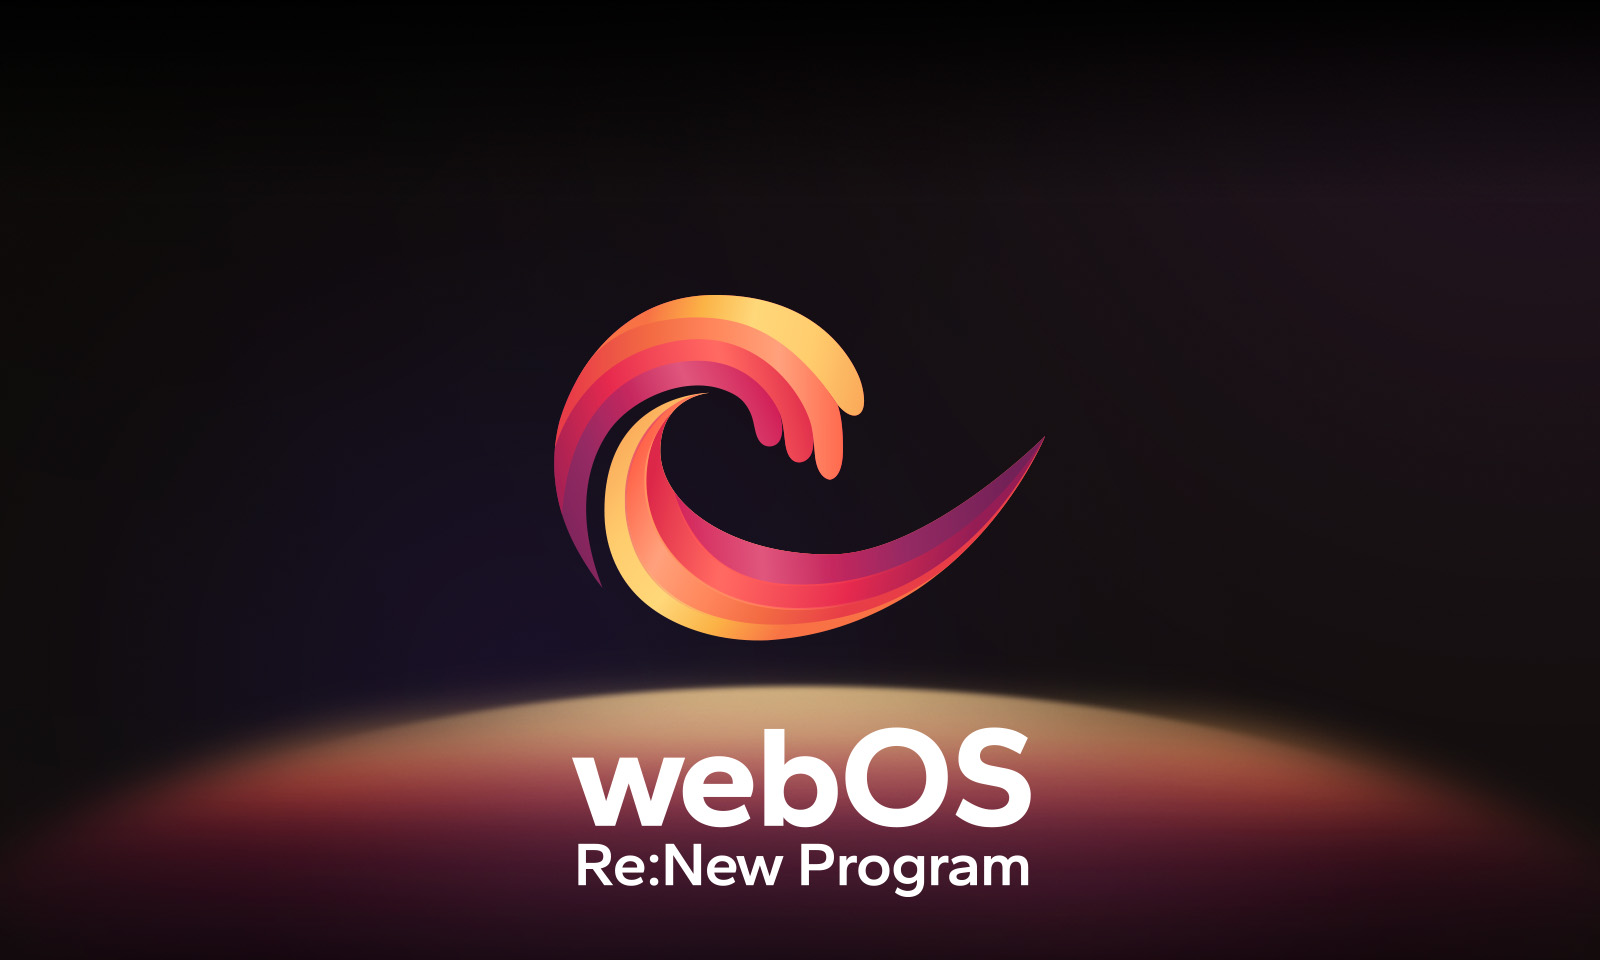 Logo webOS sa vznáša v strede na čiernom pozadí a priestor pod ním je osvetlený farbami loga – červenou, oranžovou a žltou. Pod logom sa nachádzajú slová „webOS Re:New Program“.